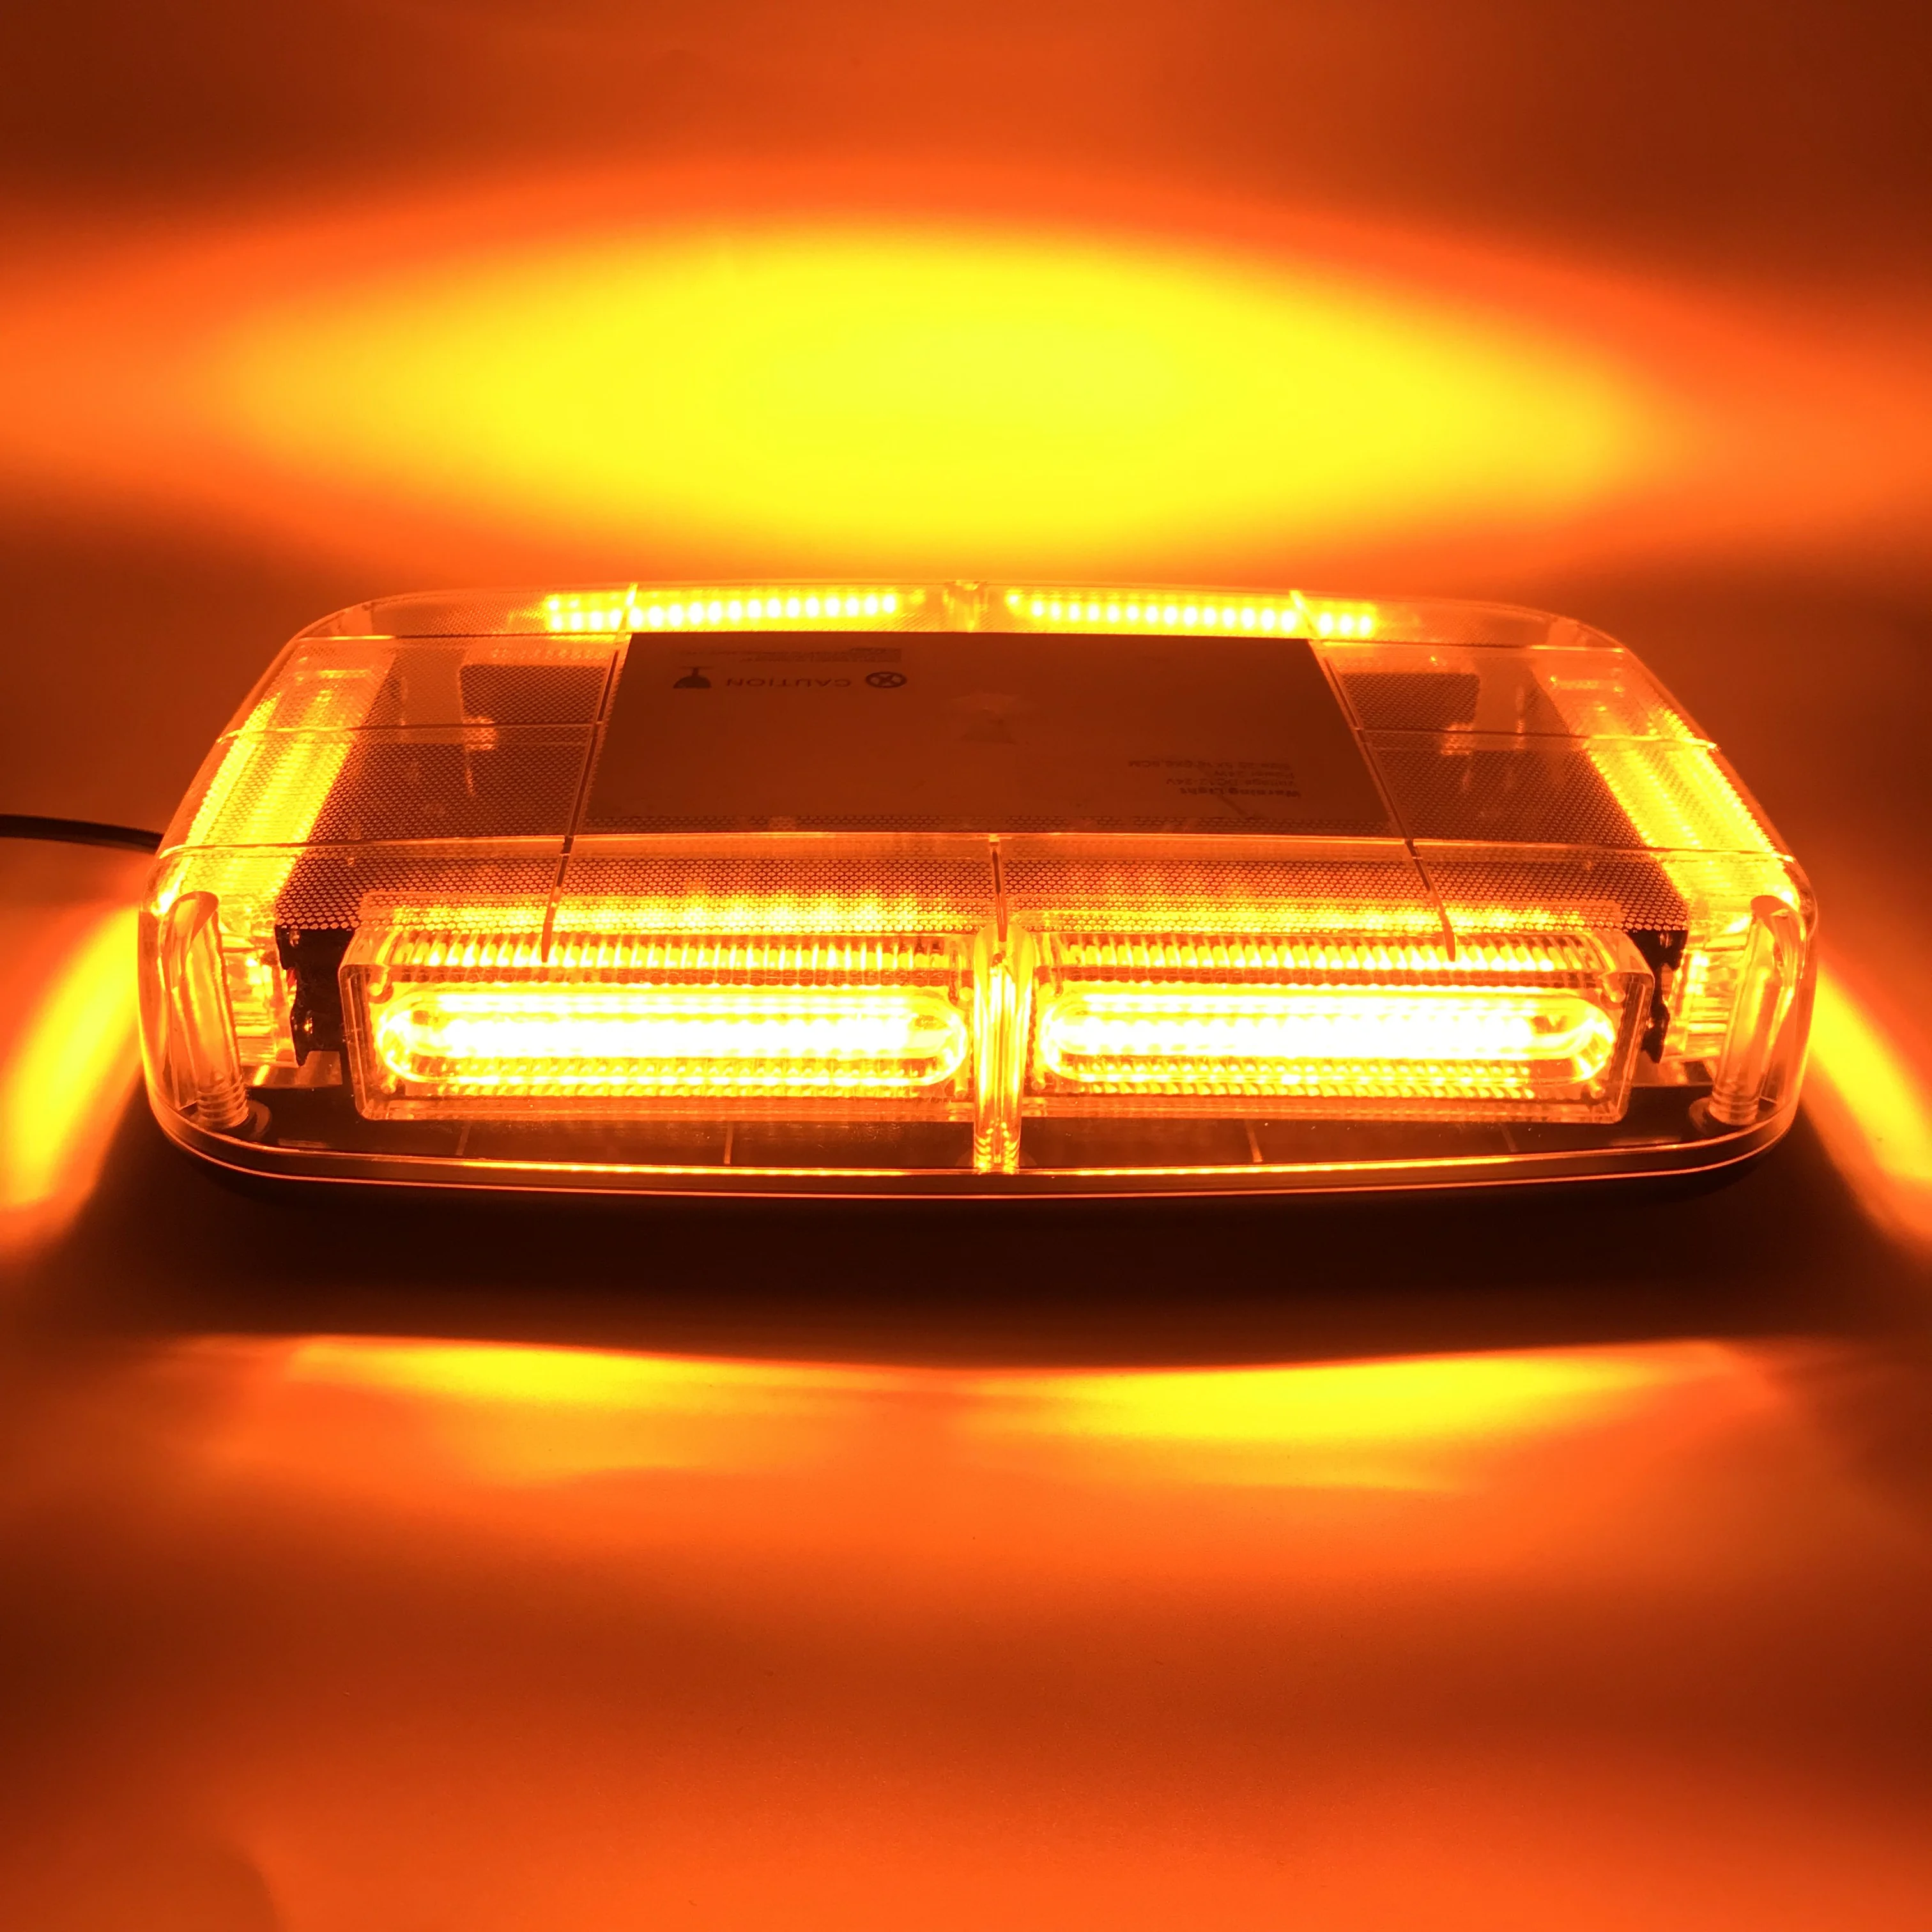 32 LED Runde 12V Auto Lkw Notfall blinklicht Polizei LED Warnung Strobe  lampe Leuchtfeuer fahrzeug dach sicherheit signal beleuchtung - AliExpress